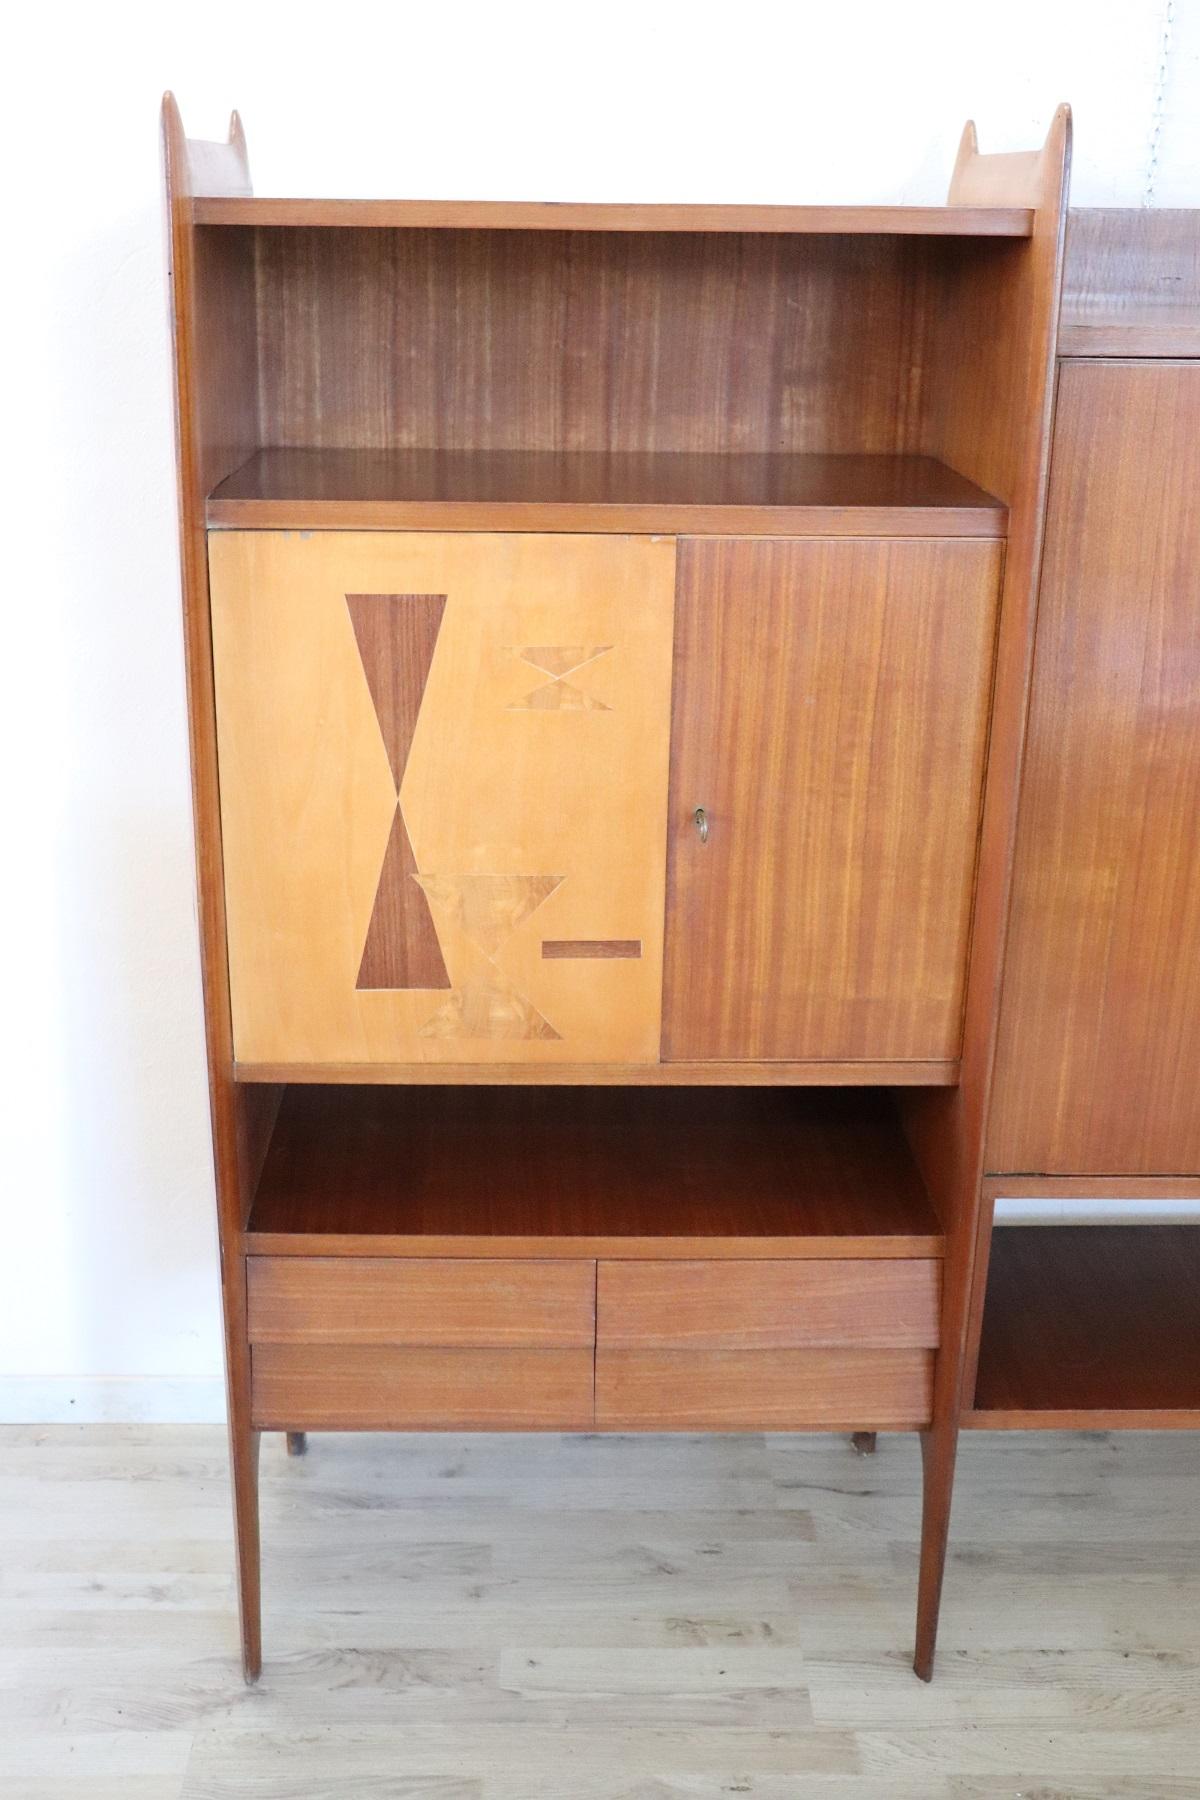 Bibliothèque ou meuble design italien des années 1960 de haute qualité. Ce meuble de design italien est fabriqué en bois de teck et peut être utilisé de différentes manières. Ils peuvent être des bibliothèques ou des armoires pratiques pour le